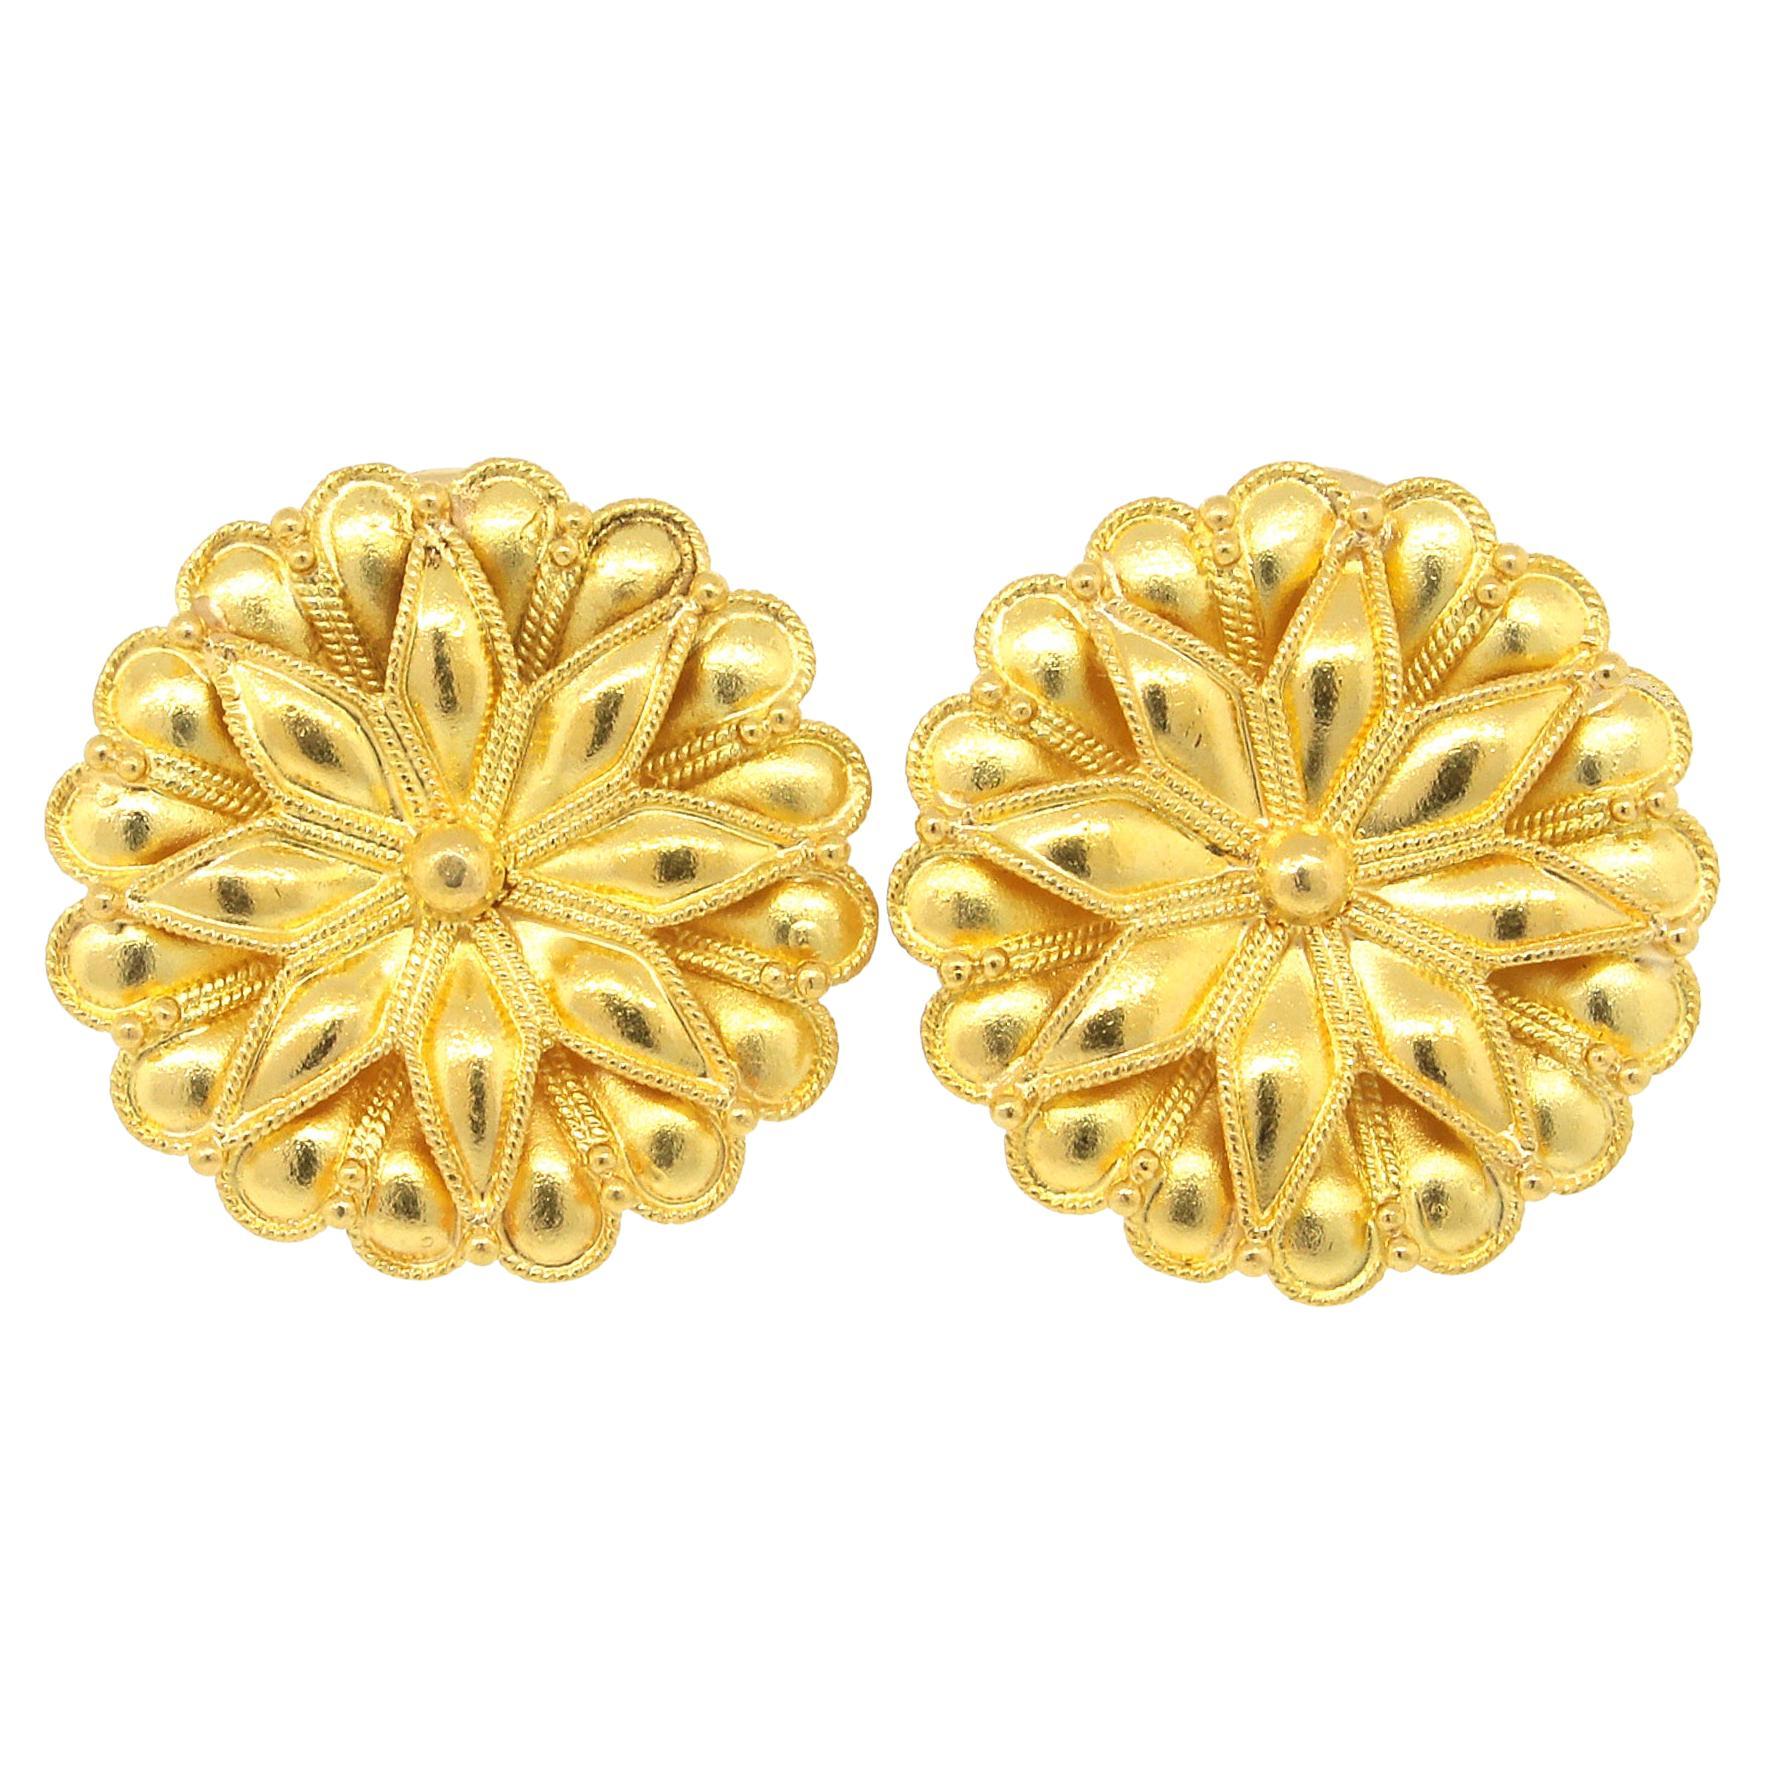 Zolotas Clips d'oreilles vintage en or jaune à motifs floraux